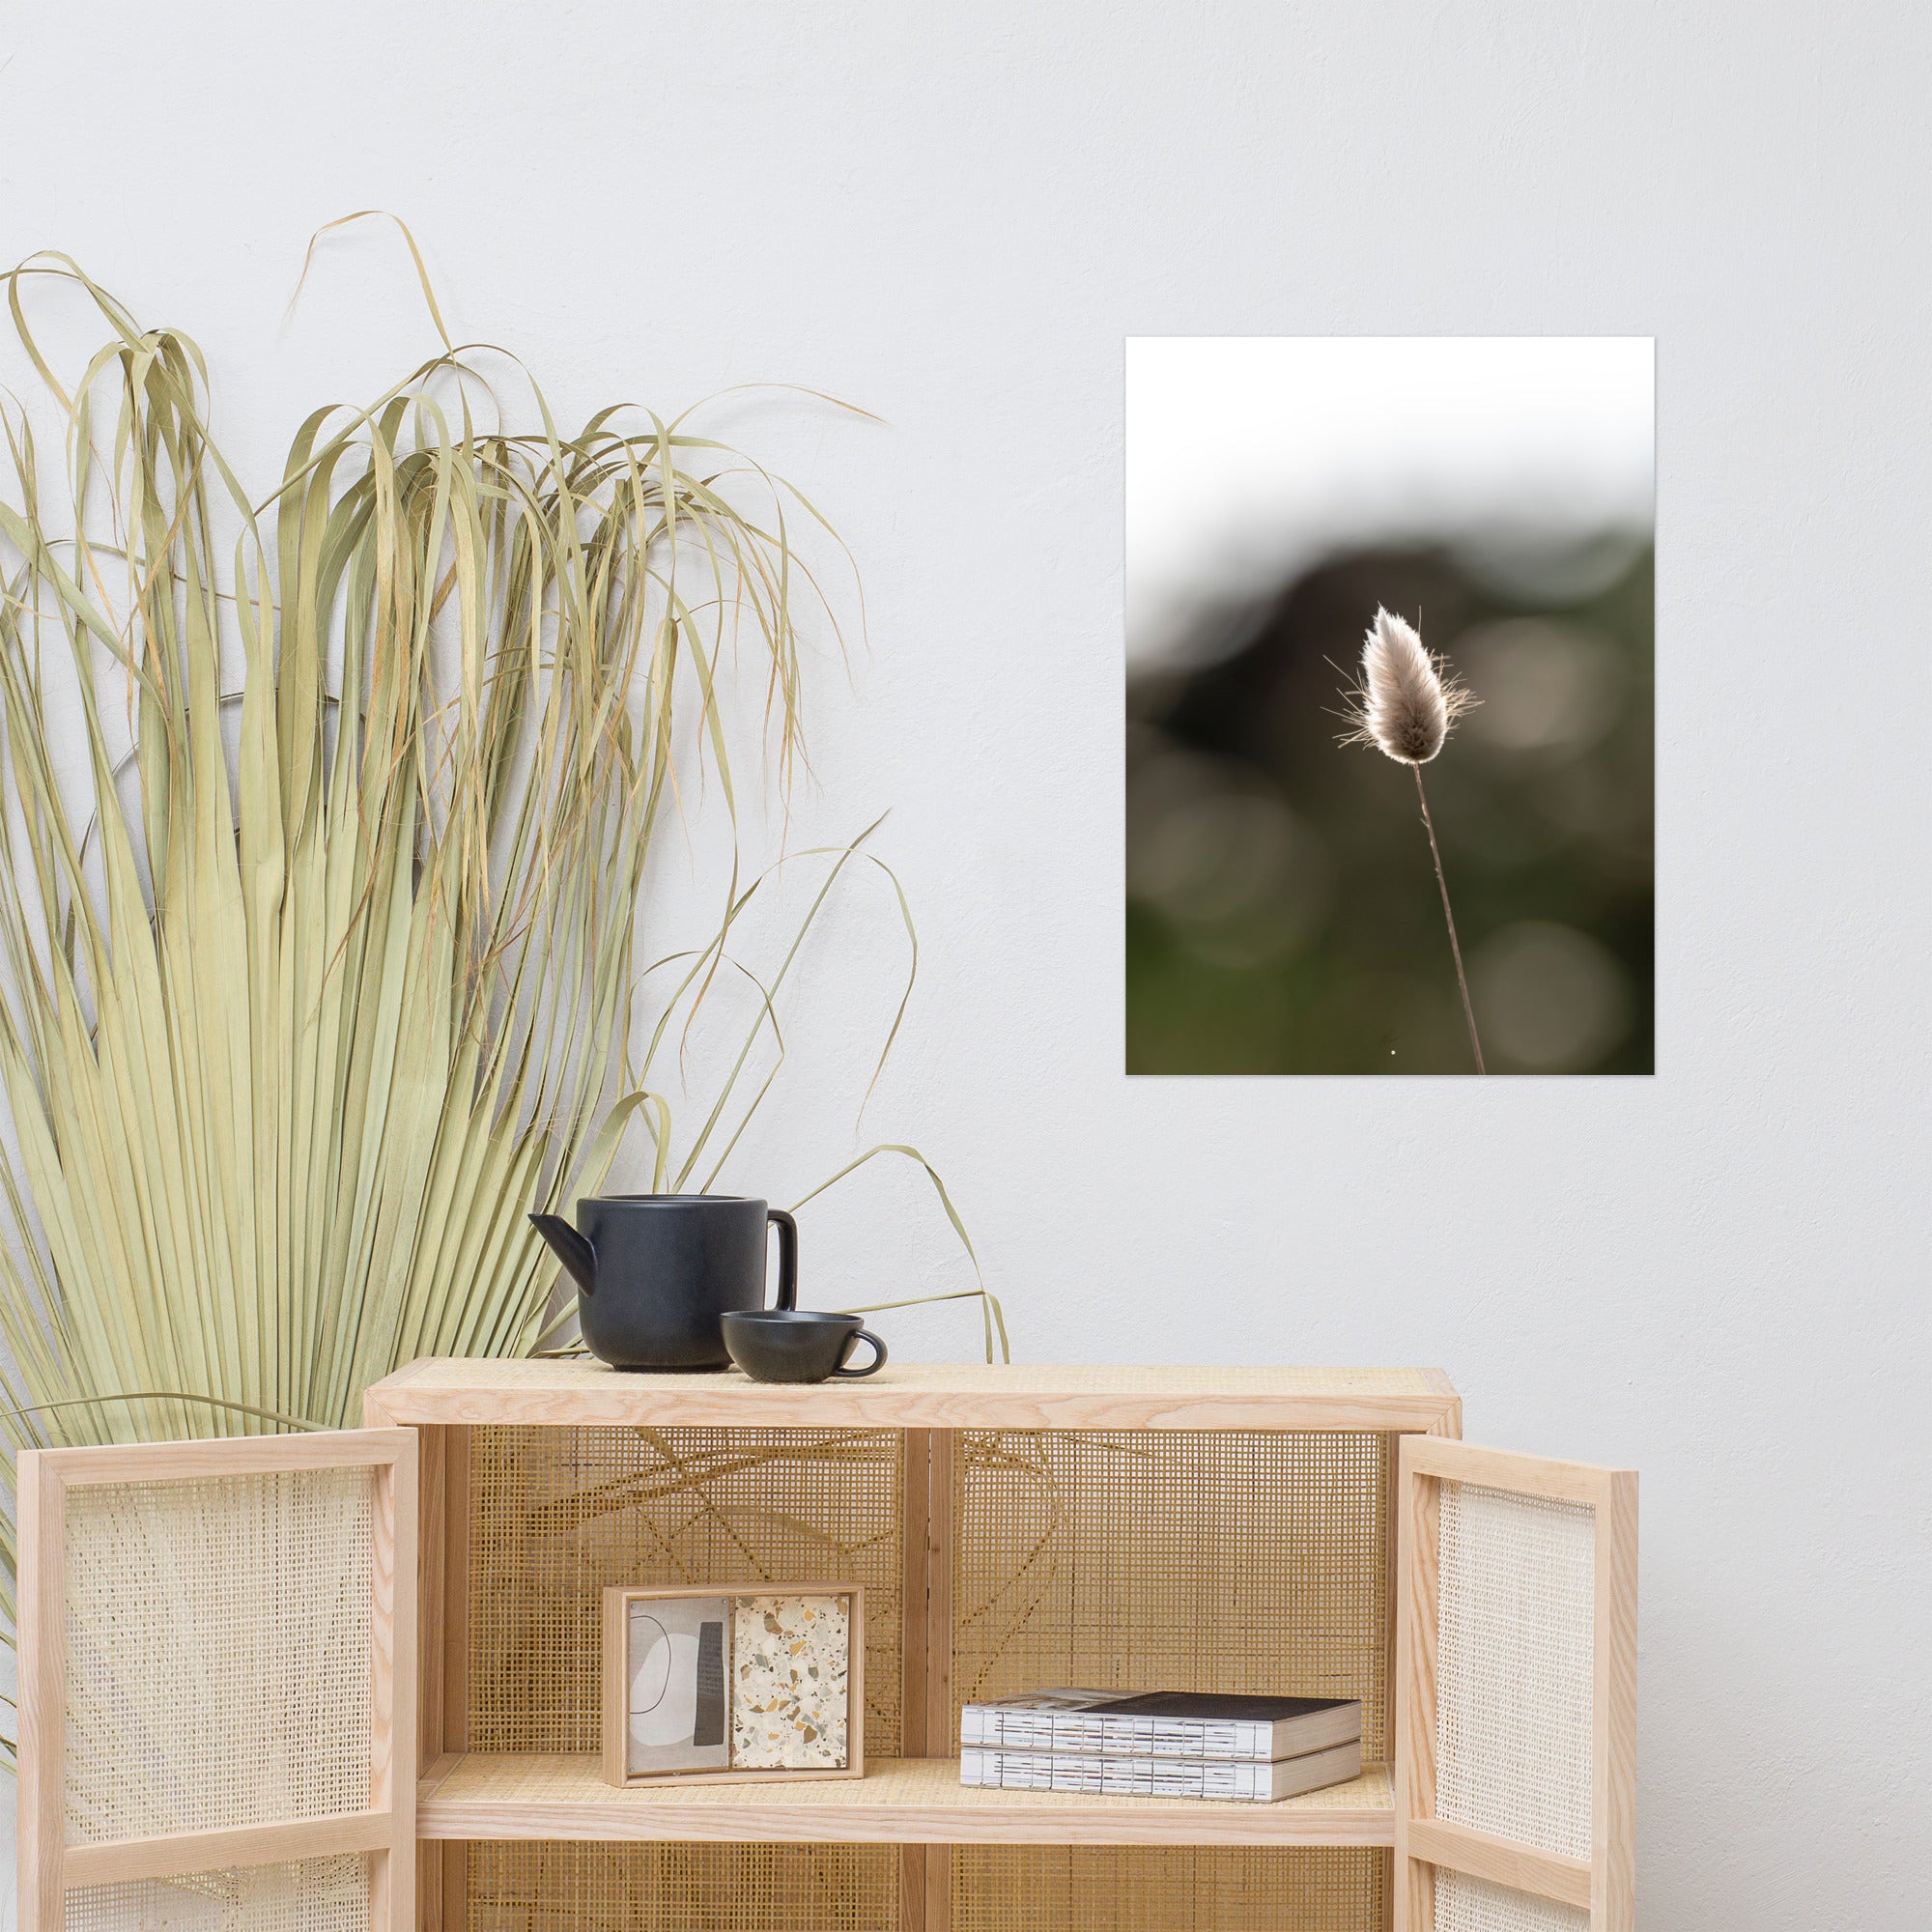 Photographie délicate 'Queue-de-lièvre', capturant de près la beauté et les détails fins d'une plante, créée par la photographe Yann Peccard.